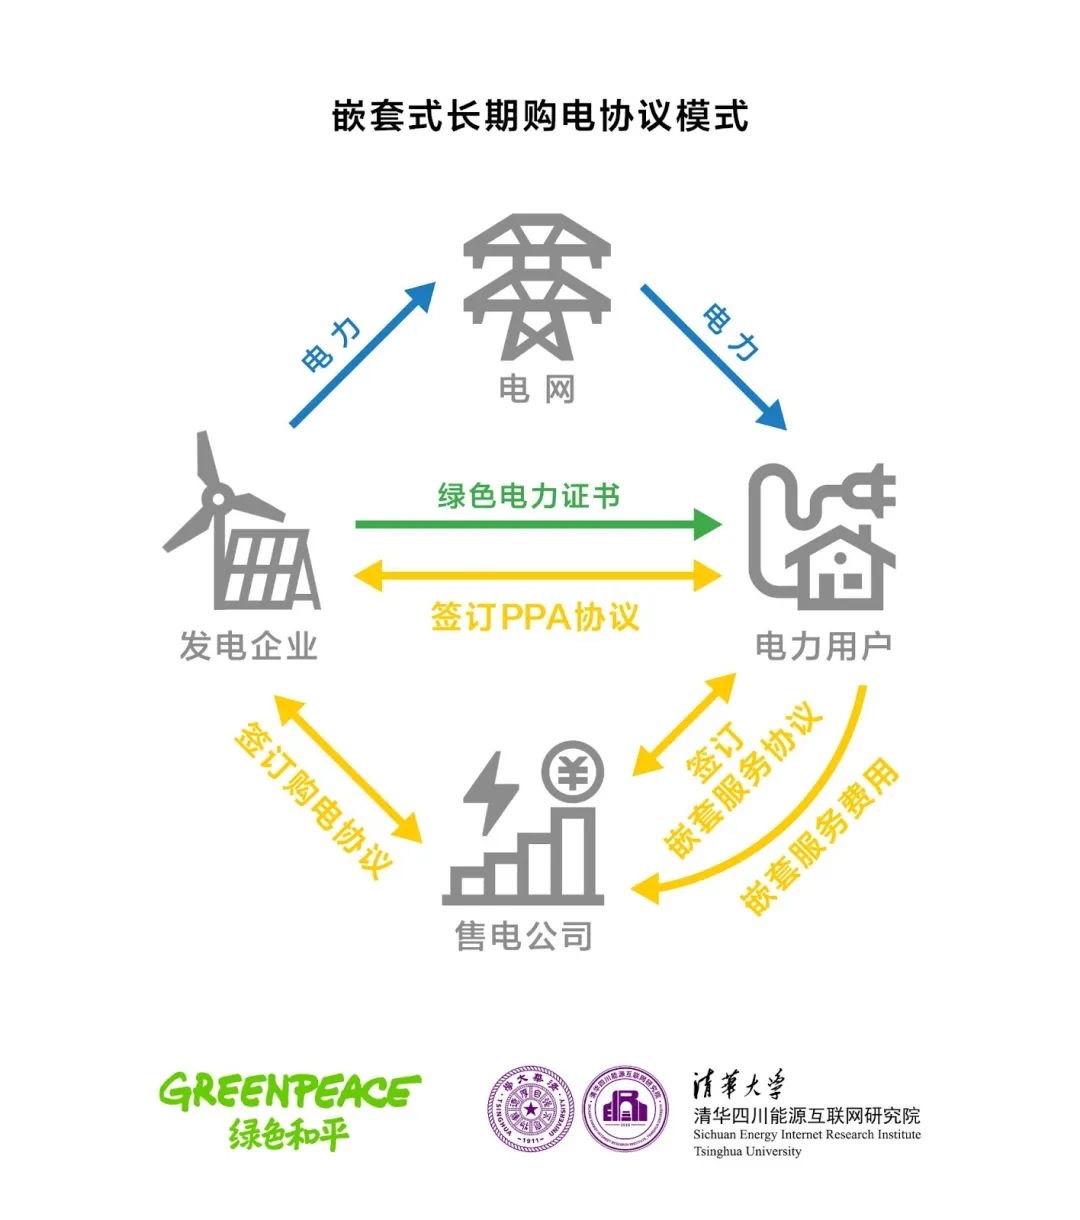 导入绿电交易新思路，清华四川院联合发布报告《嵌套式长期购电协议在中国的应用与发展》